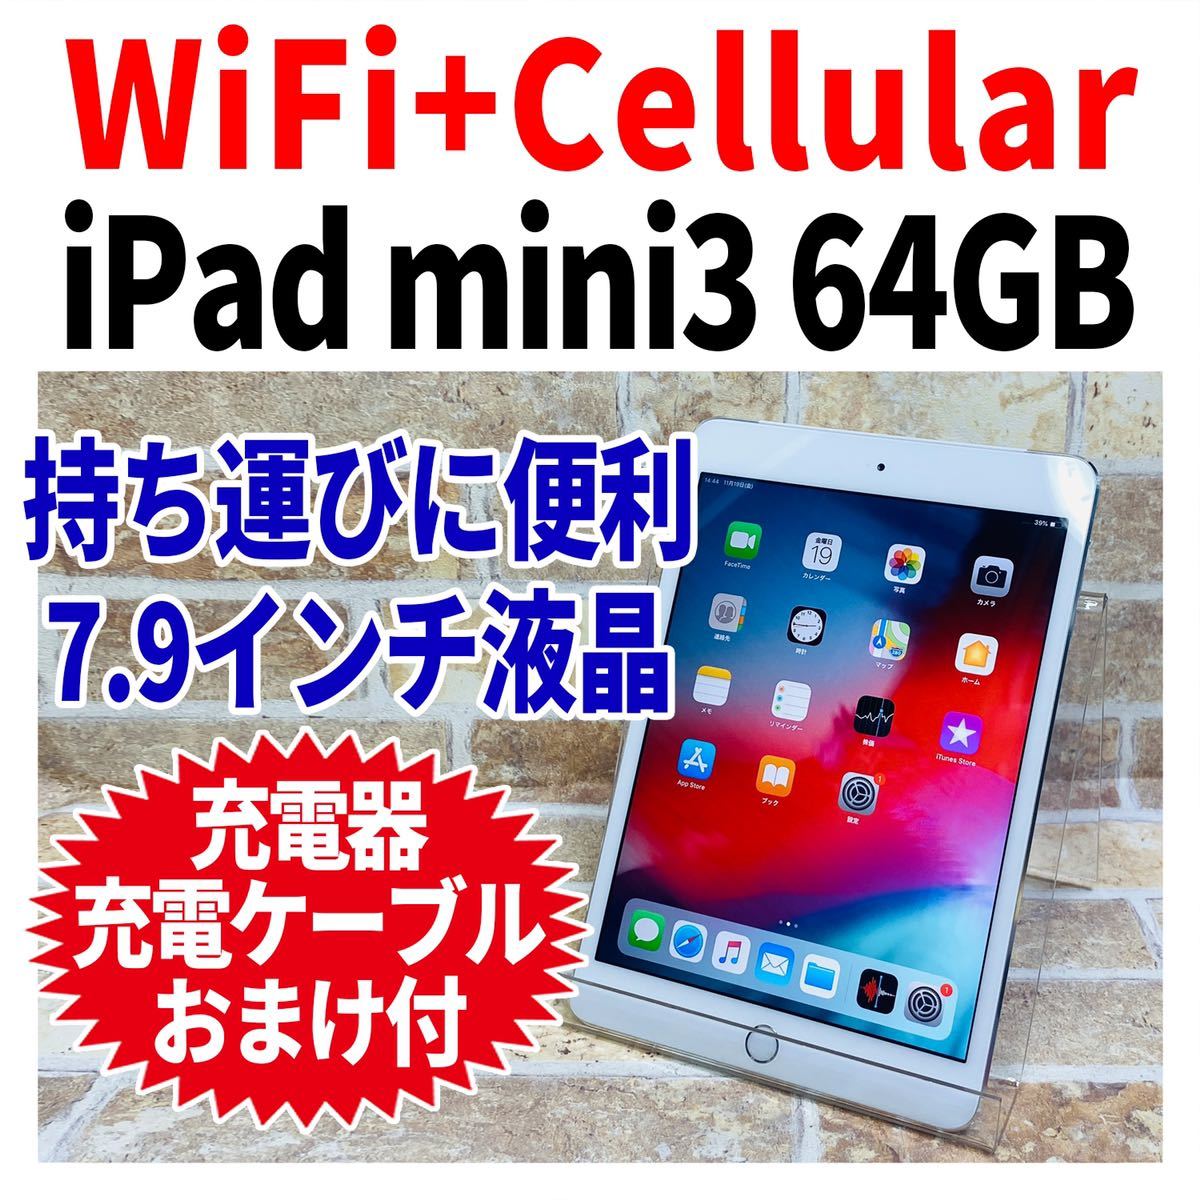 WiFi+Cellular iPad mini3 64GB シルバー 電池良好 完全動作品